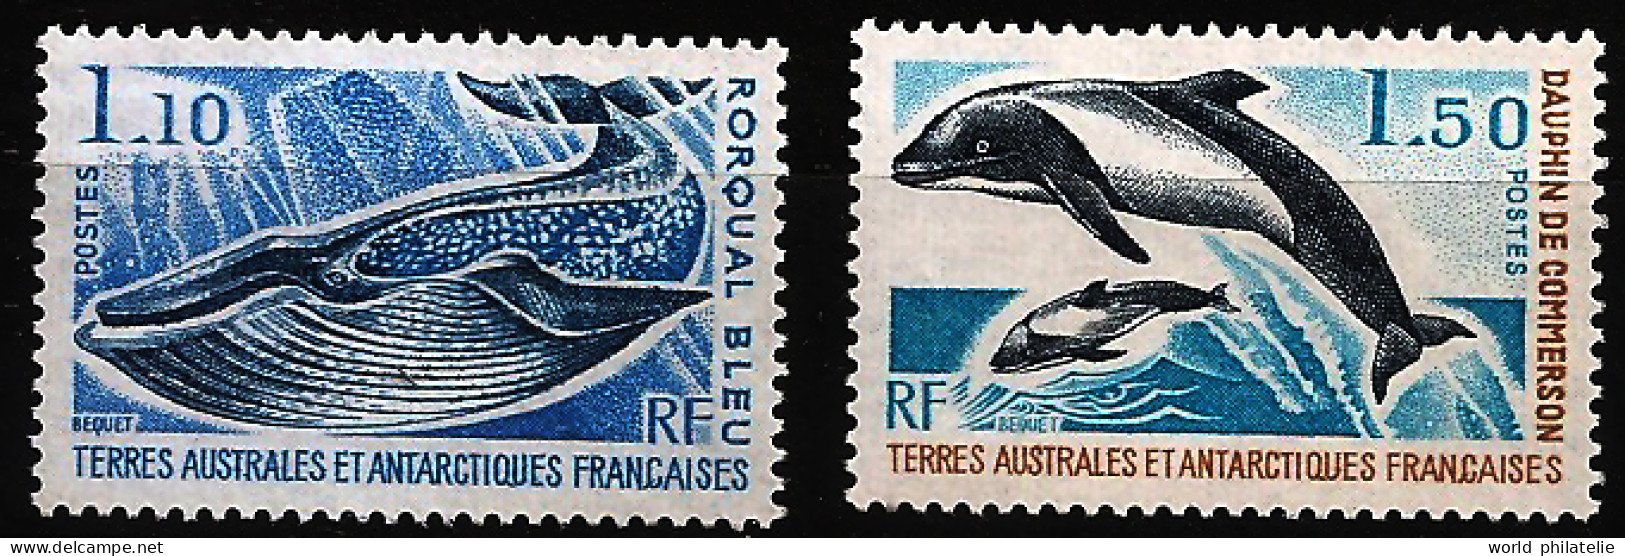 TAAF Terres Australes 1977 N° 64 / 5 ** Poissons, Cétacés, Rorqual Bleu, Dauphin De Commerson, Baleine, Bougainville - Neufs